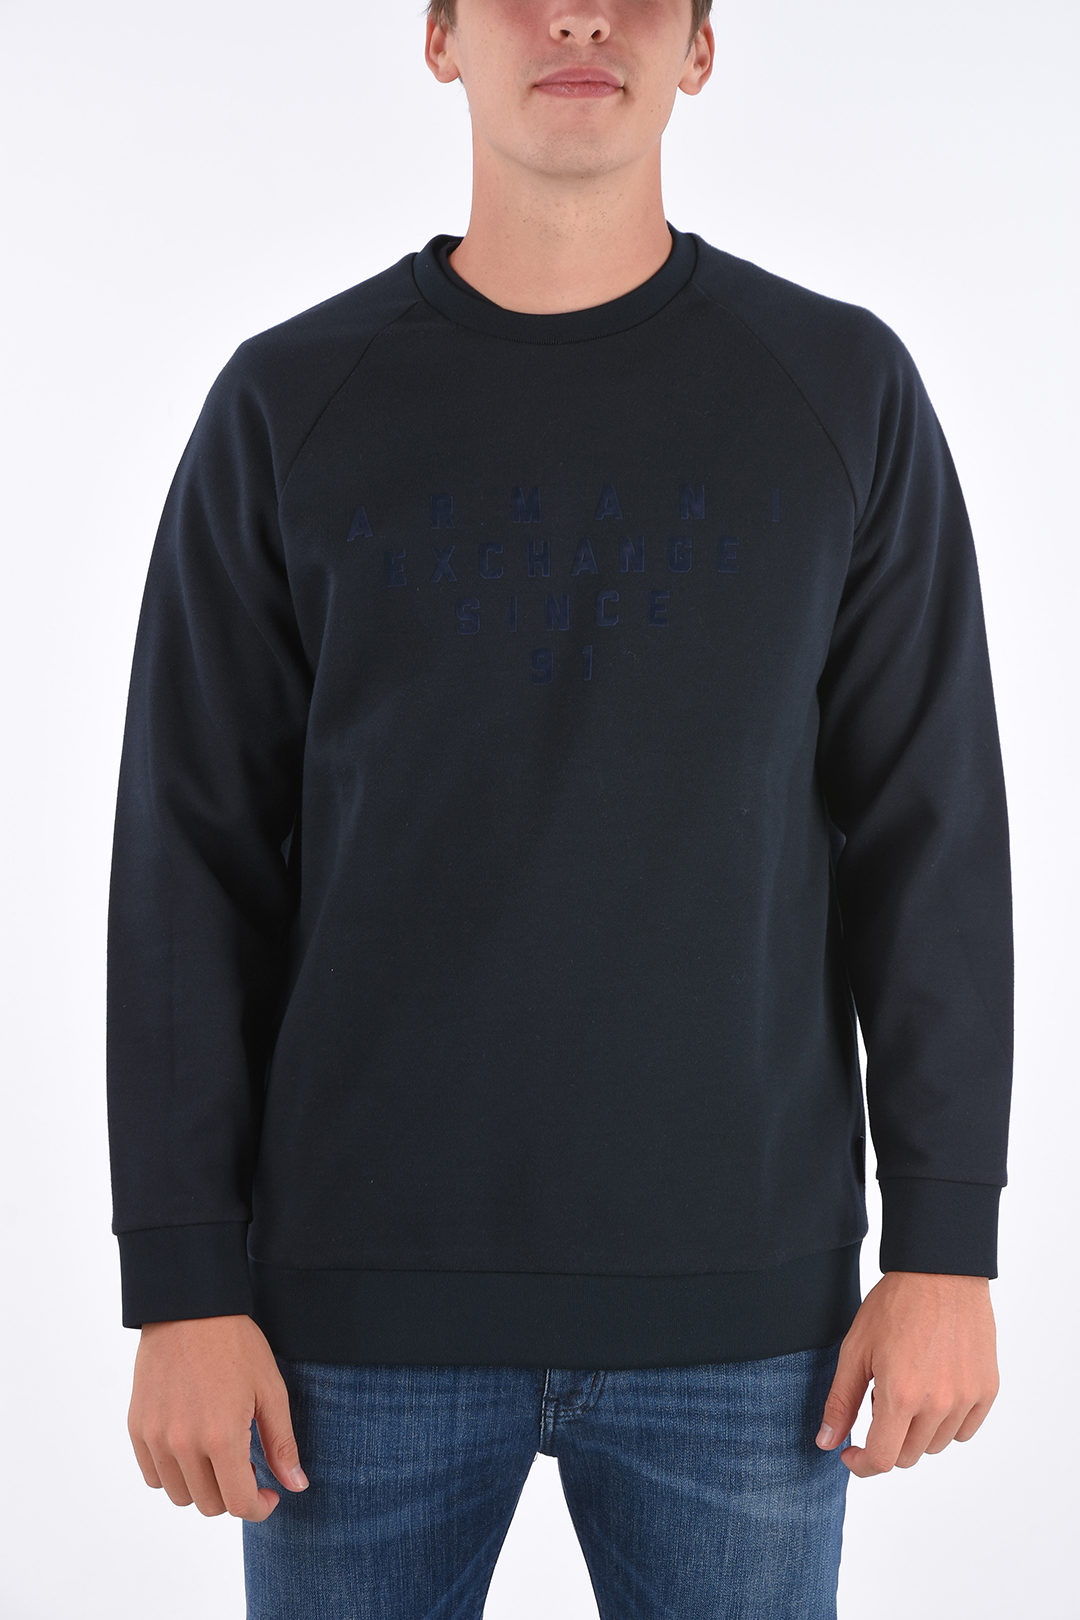 Armani ARMANI EXCHANGE crewneck sweatshirt with logo men - Glamood Outlet